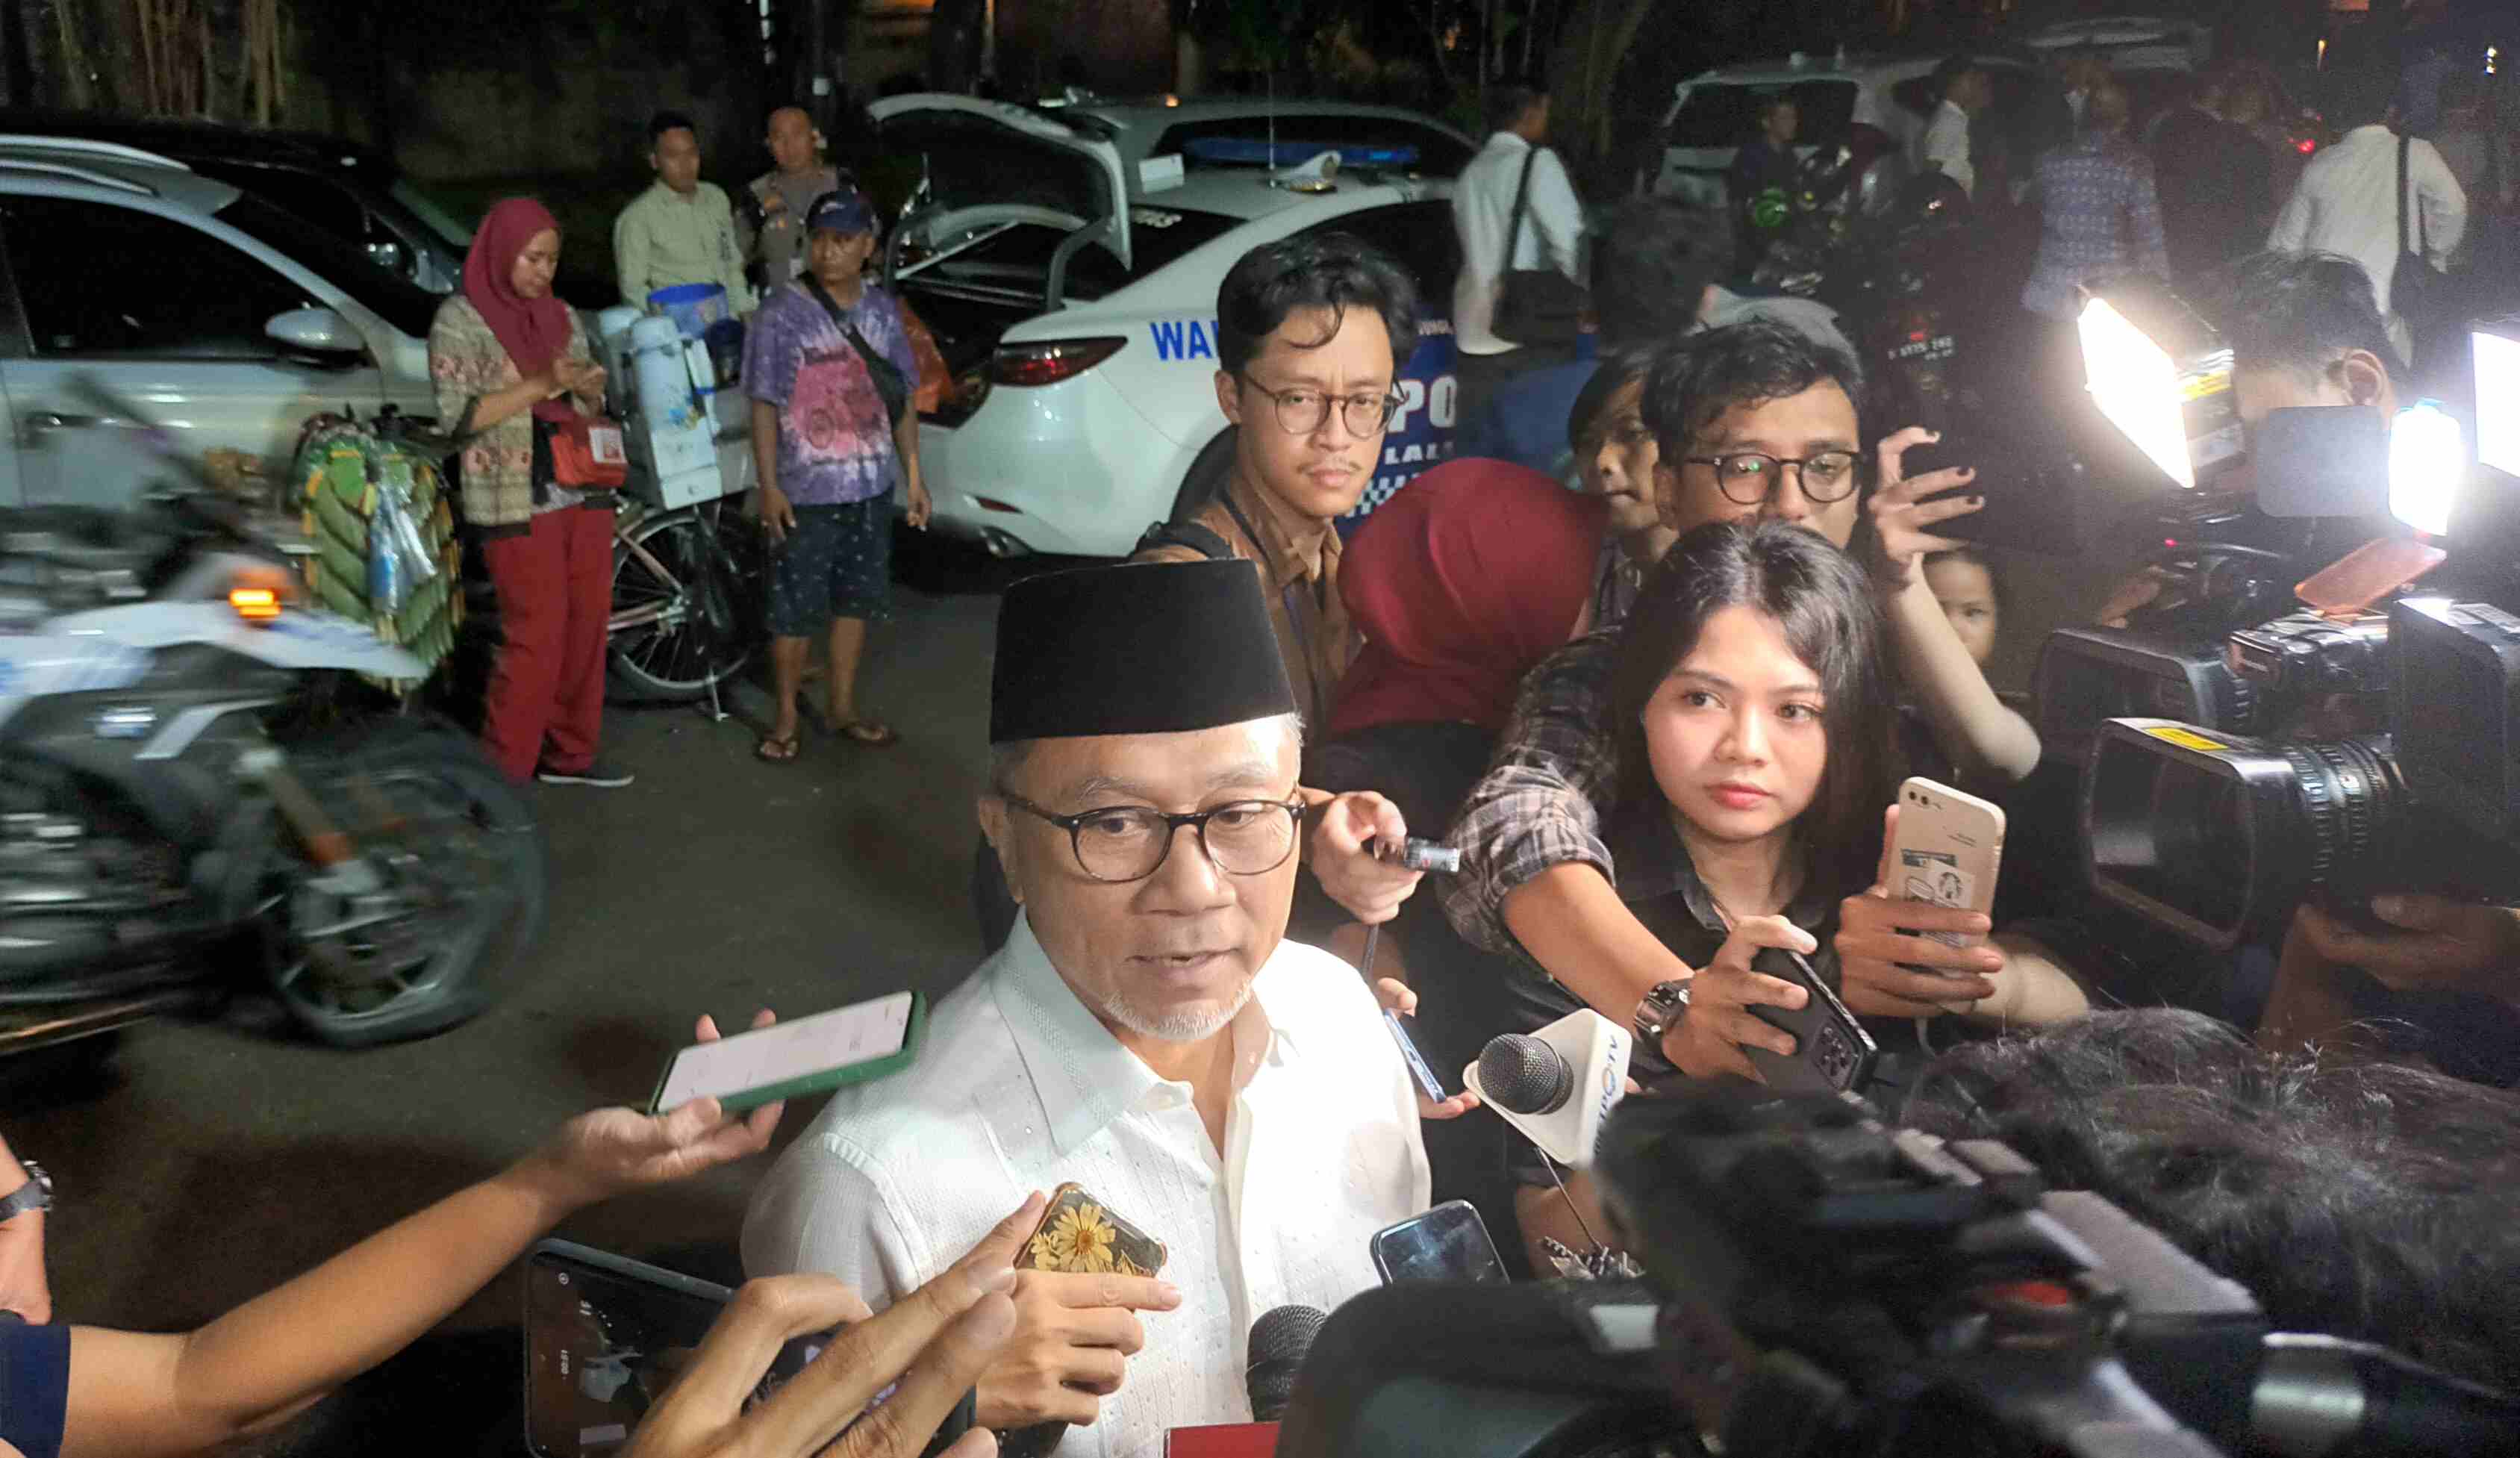 Jelang Pengumuman Hasil Pemilu, Zulhas: Akhiri Pertikaian, Rayakan Kemenangan Indonesia